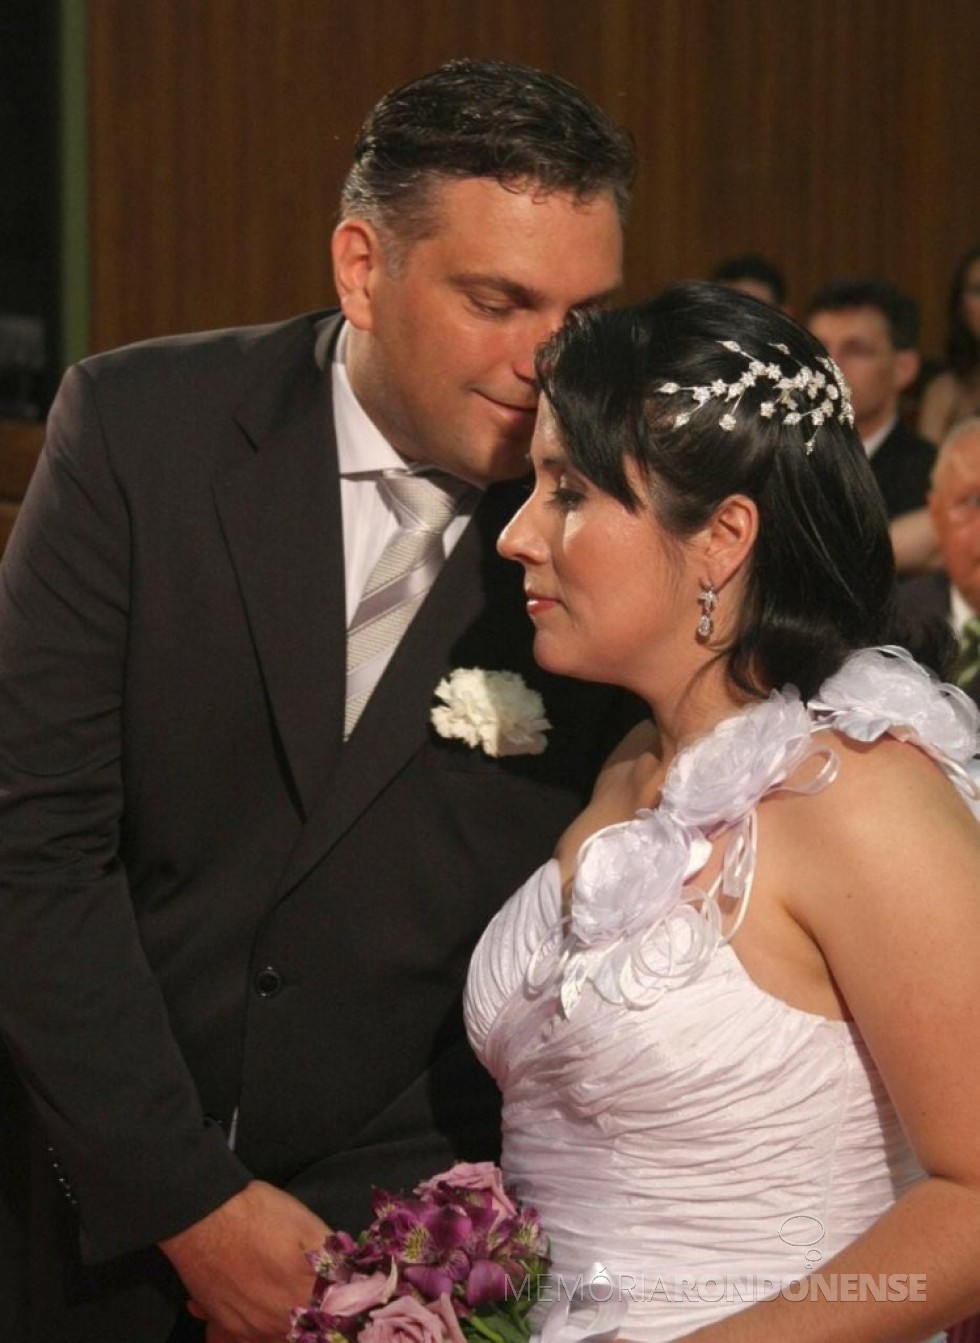 || Noivos Helda Elaine Völz e Evandro Bier que casaram em final der Outubro de 2009.
Imagem: Arquivo pessoal - FOTO 13 - 